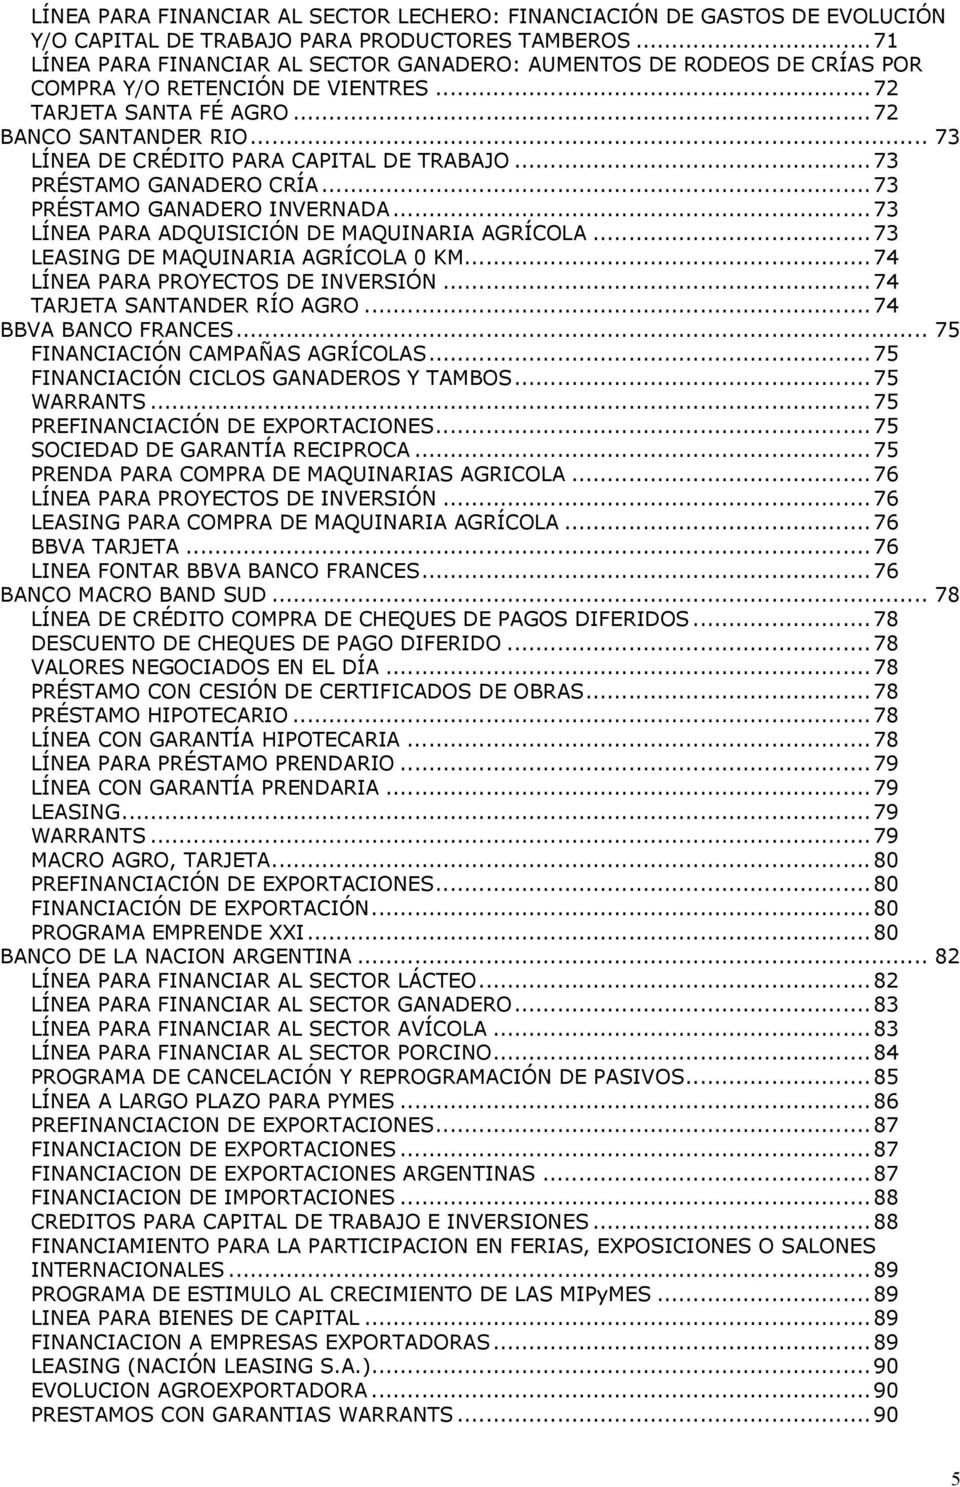 .. 73 LÍNEA DE CRÉDITO PARA CAPITAL DE TRABAJO...73 PRÉSTAMO GANADERO CRÍA...73 PRÉSTAMO GANADERO INVERNADA...73 LÍNEA PARA ADQUISICIÓN DE MAQUINARIA AGRÍCOLA...73 LEASING DE MAQUINARIA AGRÍCOLA 0 KM.